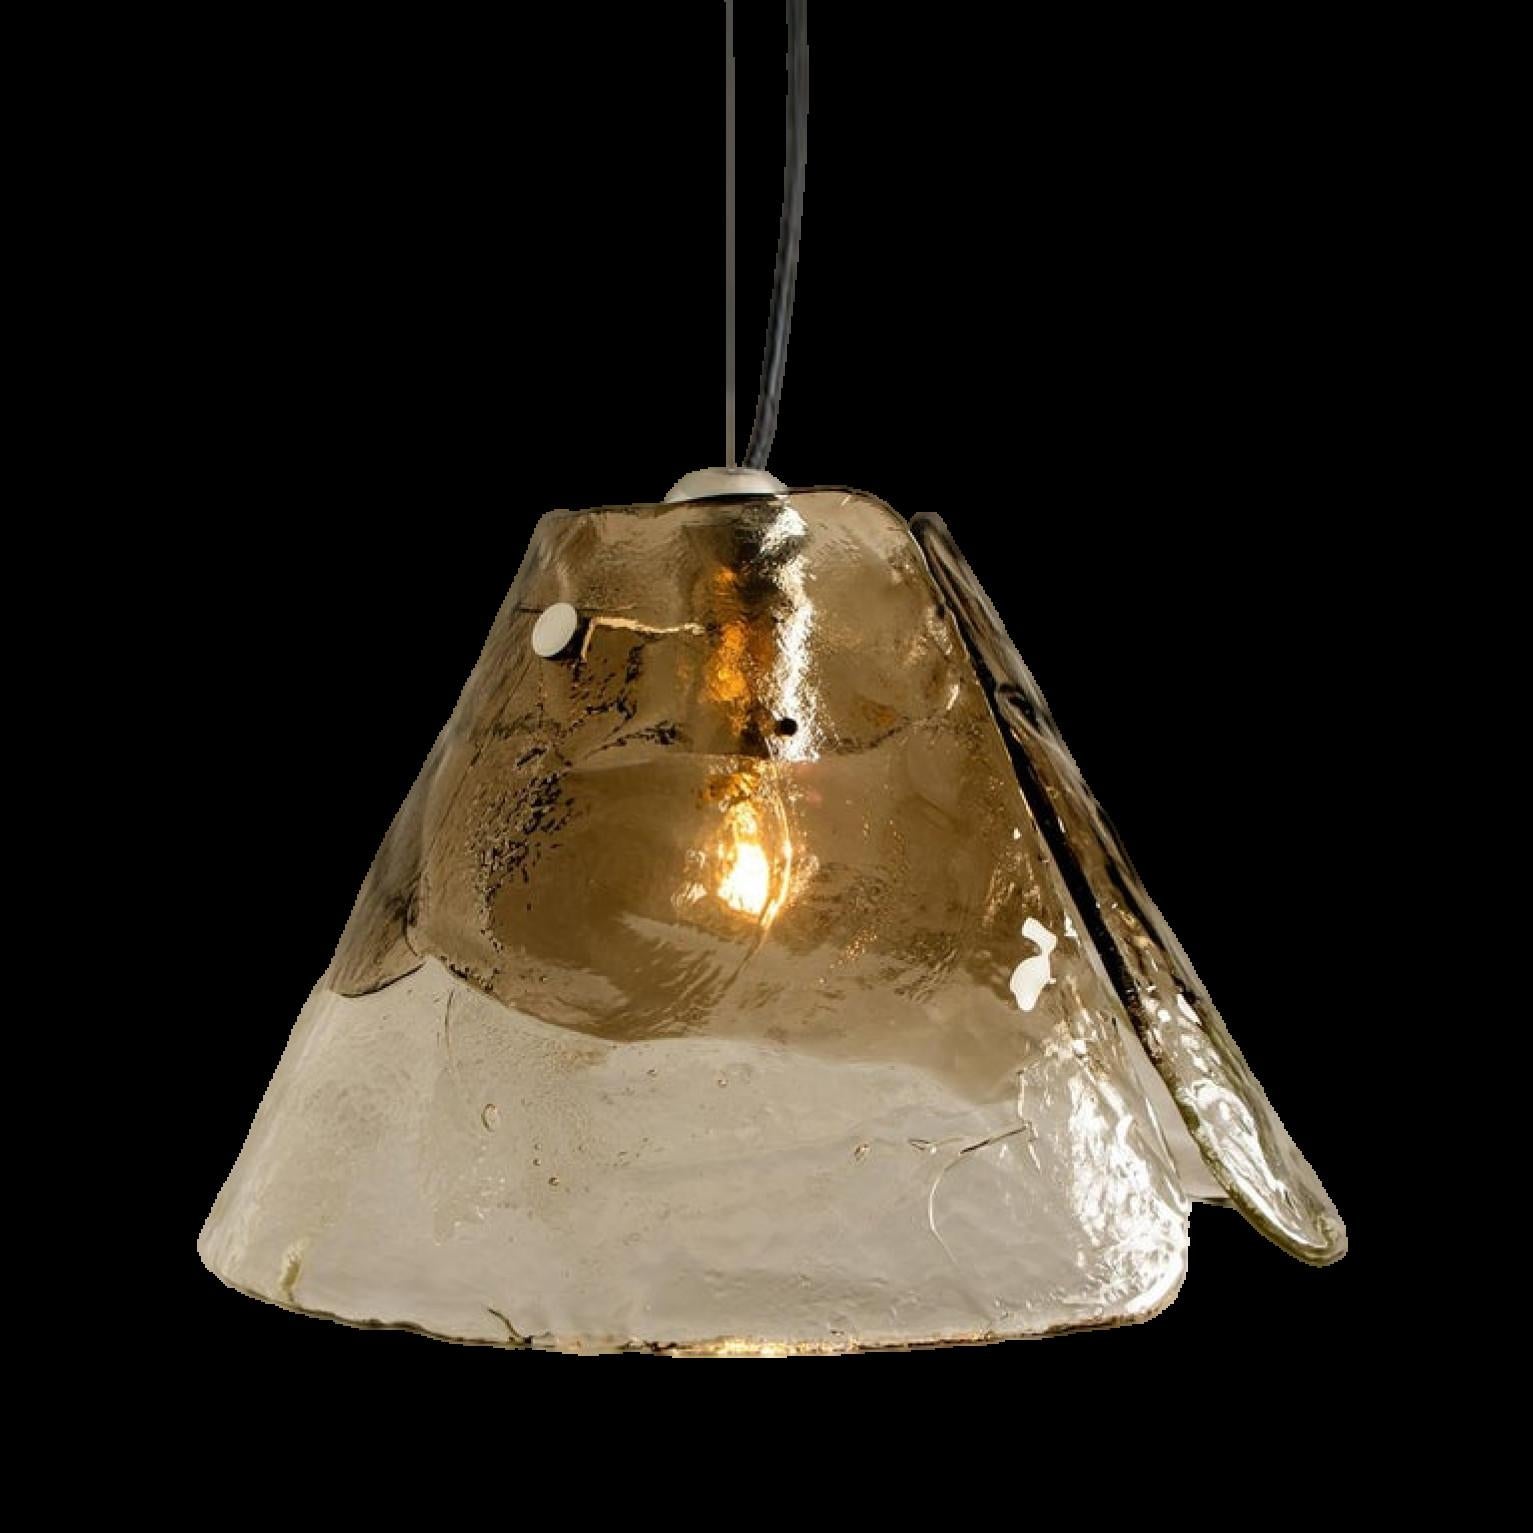 Hängeleuchte von Carlo Nason für Mazzega.
Vier kristallklare und geräucherte Blätter bilden dieses schöne Stück aus dickem handgefertigtem Murano-Glas.

Maße: H 30 cm (15.3